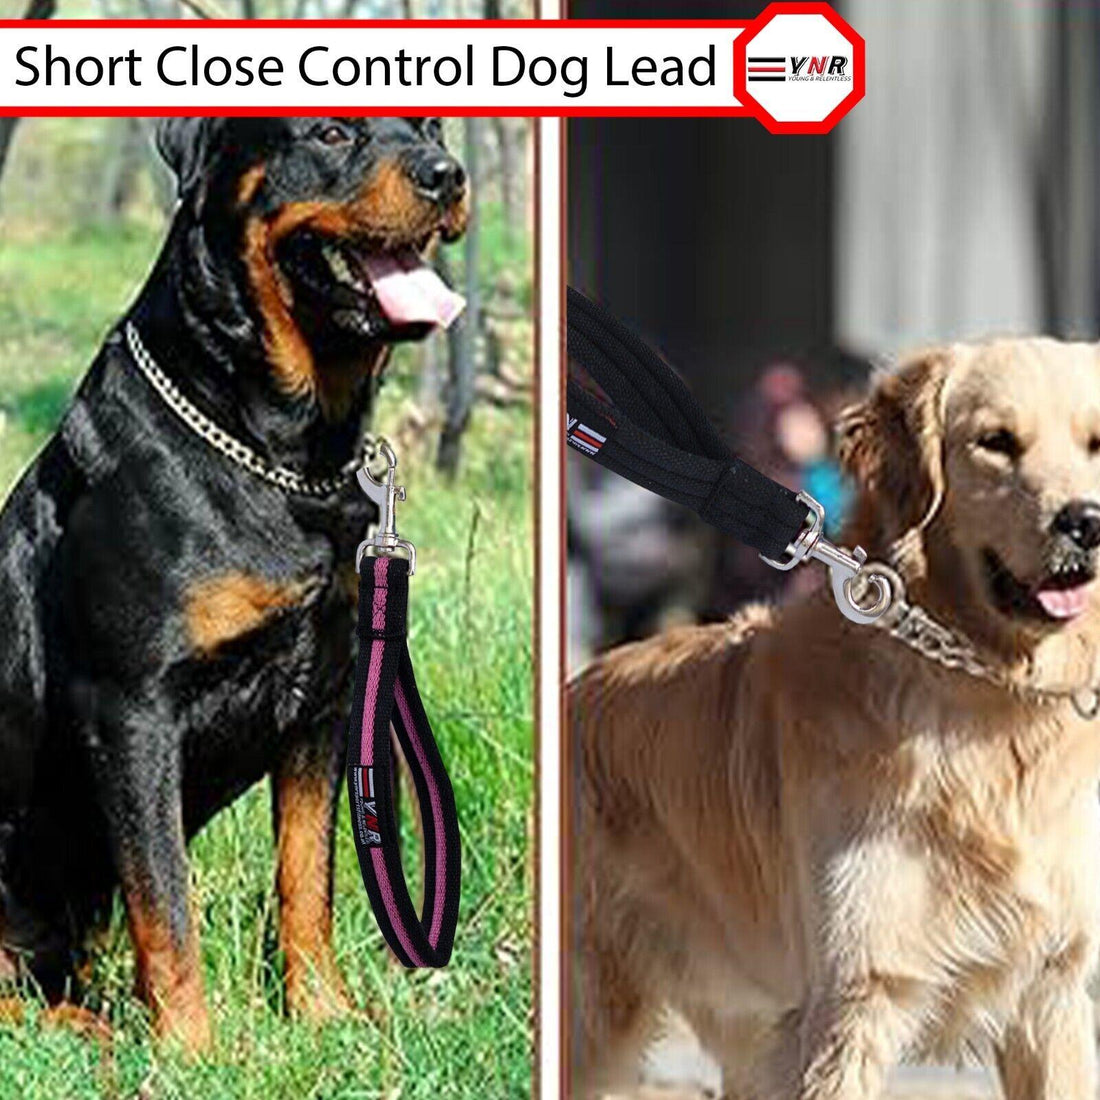 10" Heavy Duty Short Dog Training Lead Leash Grab Handle Close / Traffic Control 25mm Wide